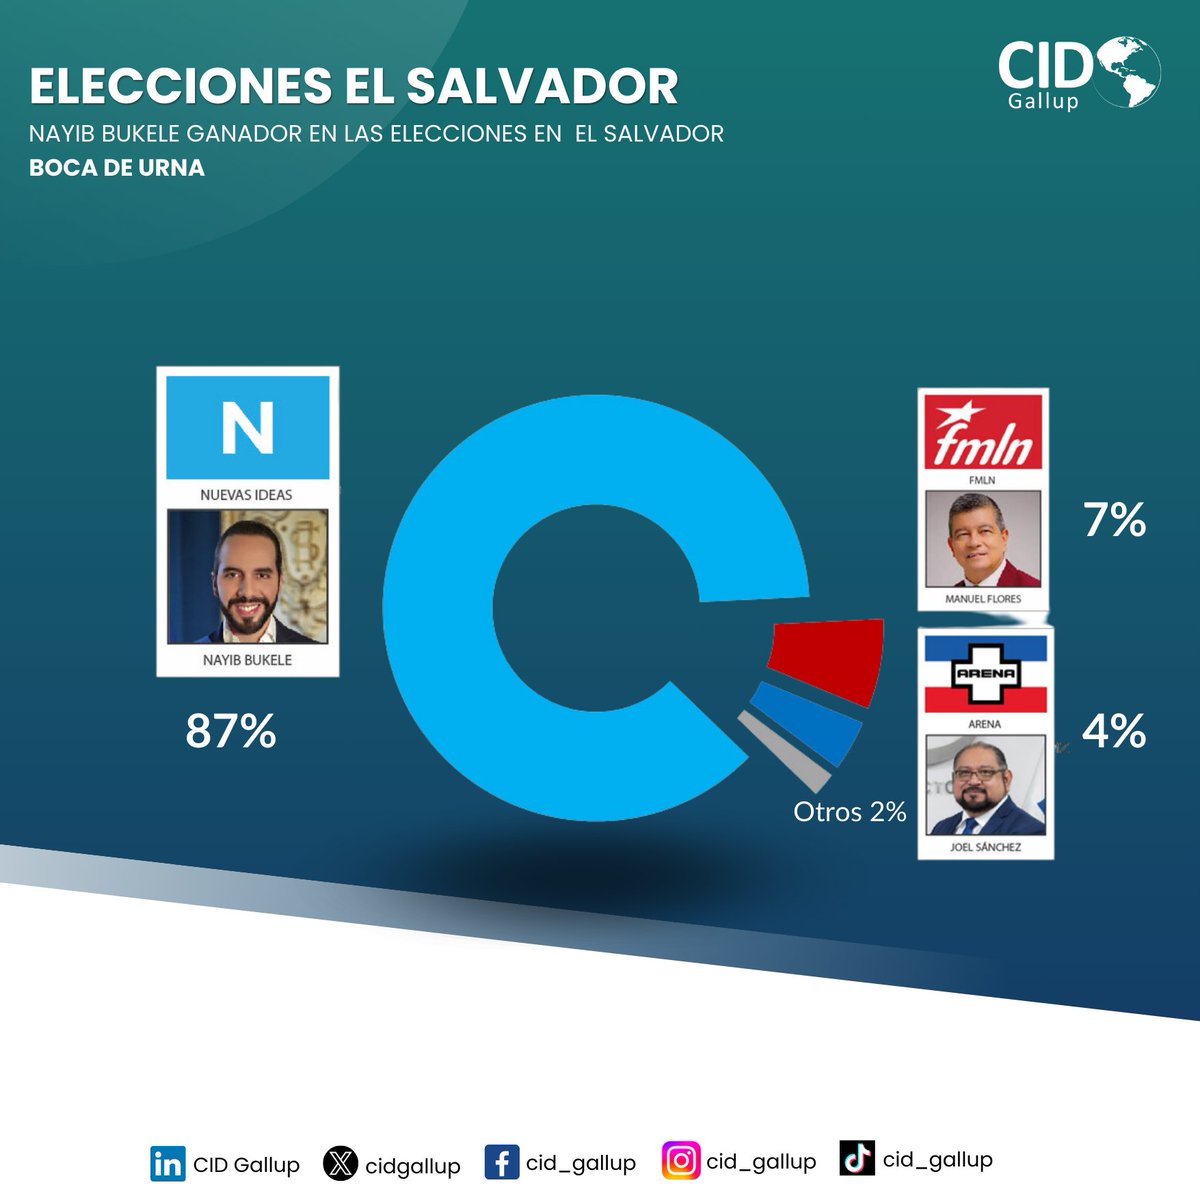 Nayib Biukele es reelegido como presidente en El Salvador (CID Gallup - Boca de Urna) #EleccionesElSalvador2024 #cidgallup #bocadeurna